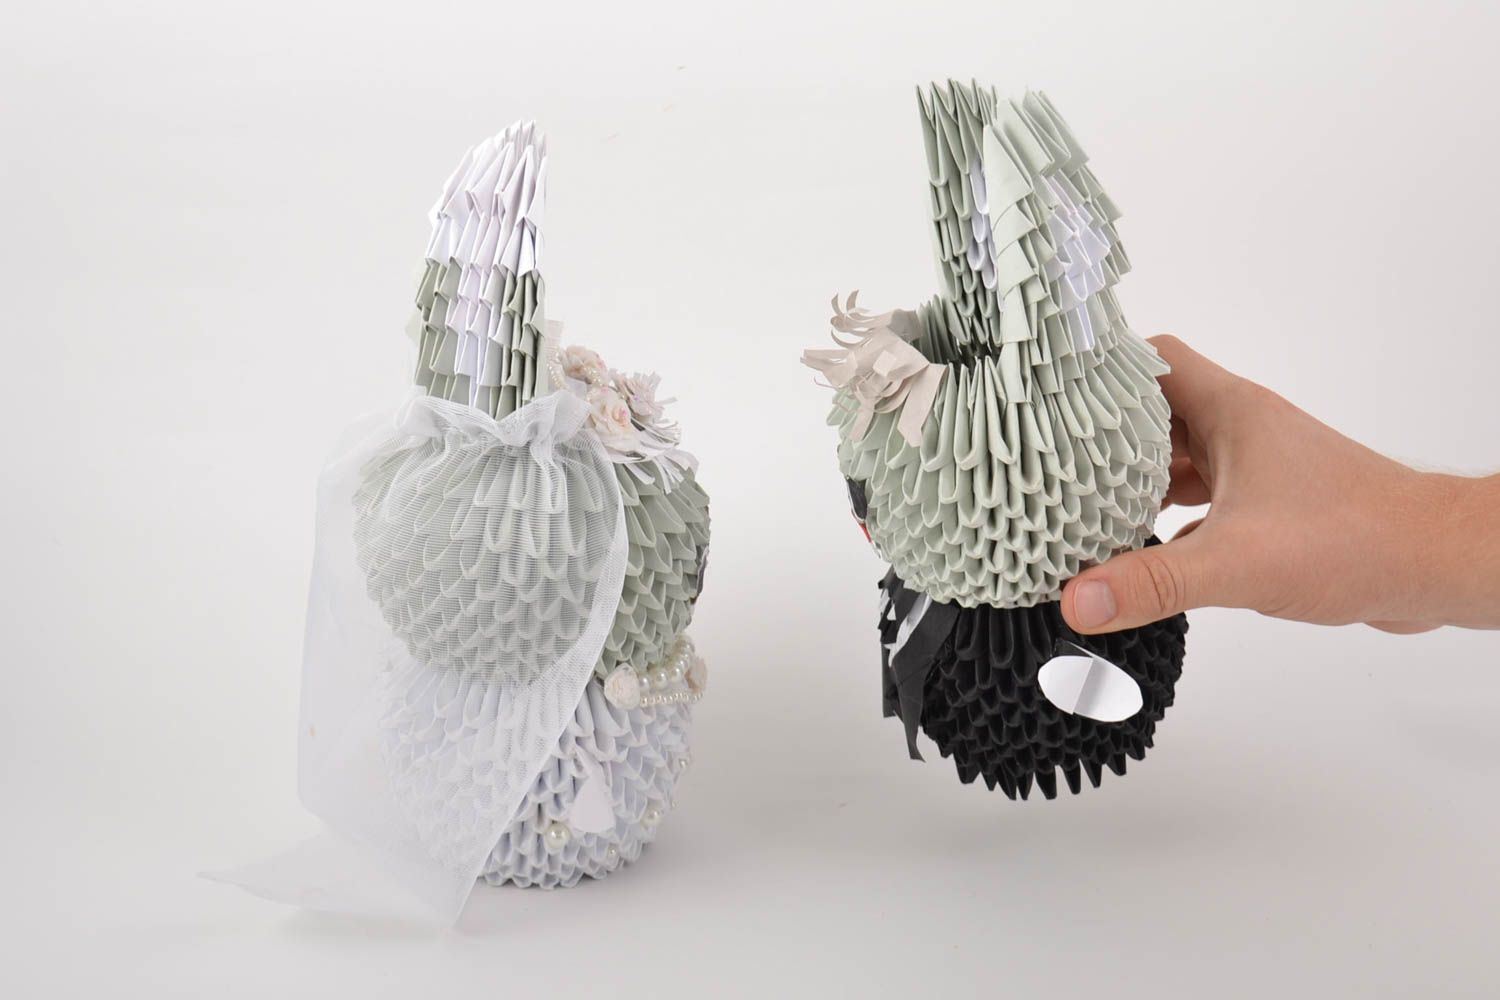 Hochzeits Origami Figurinen aus Papier künstlerische interessante Handarbeit  foto 4